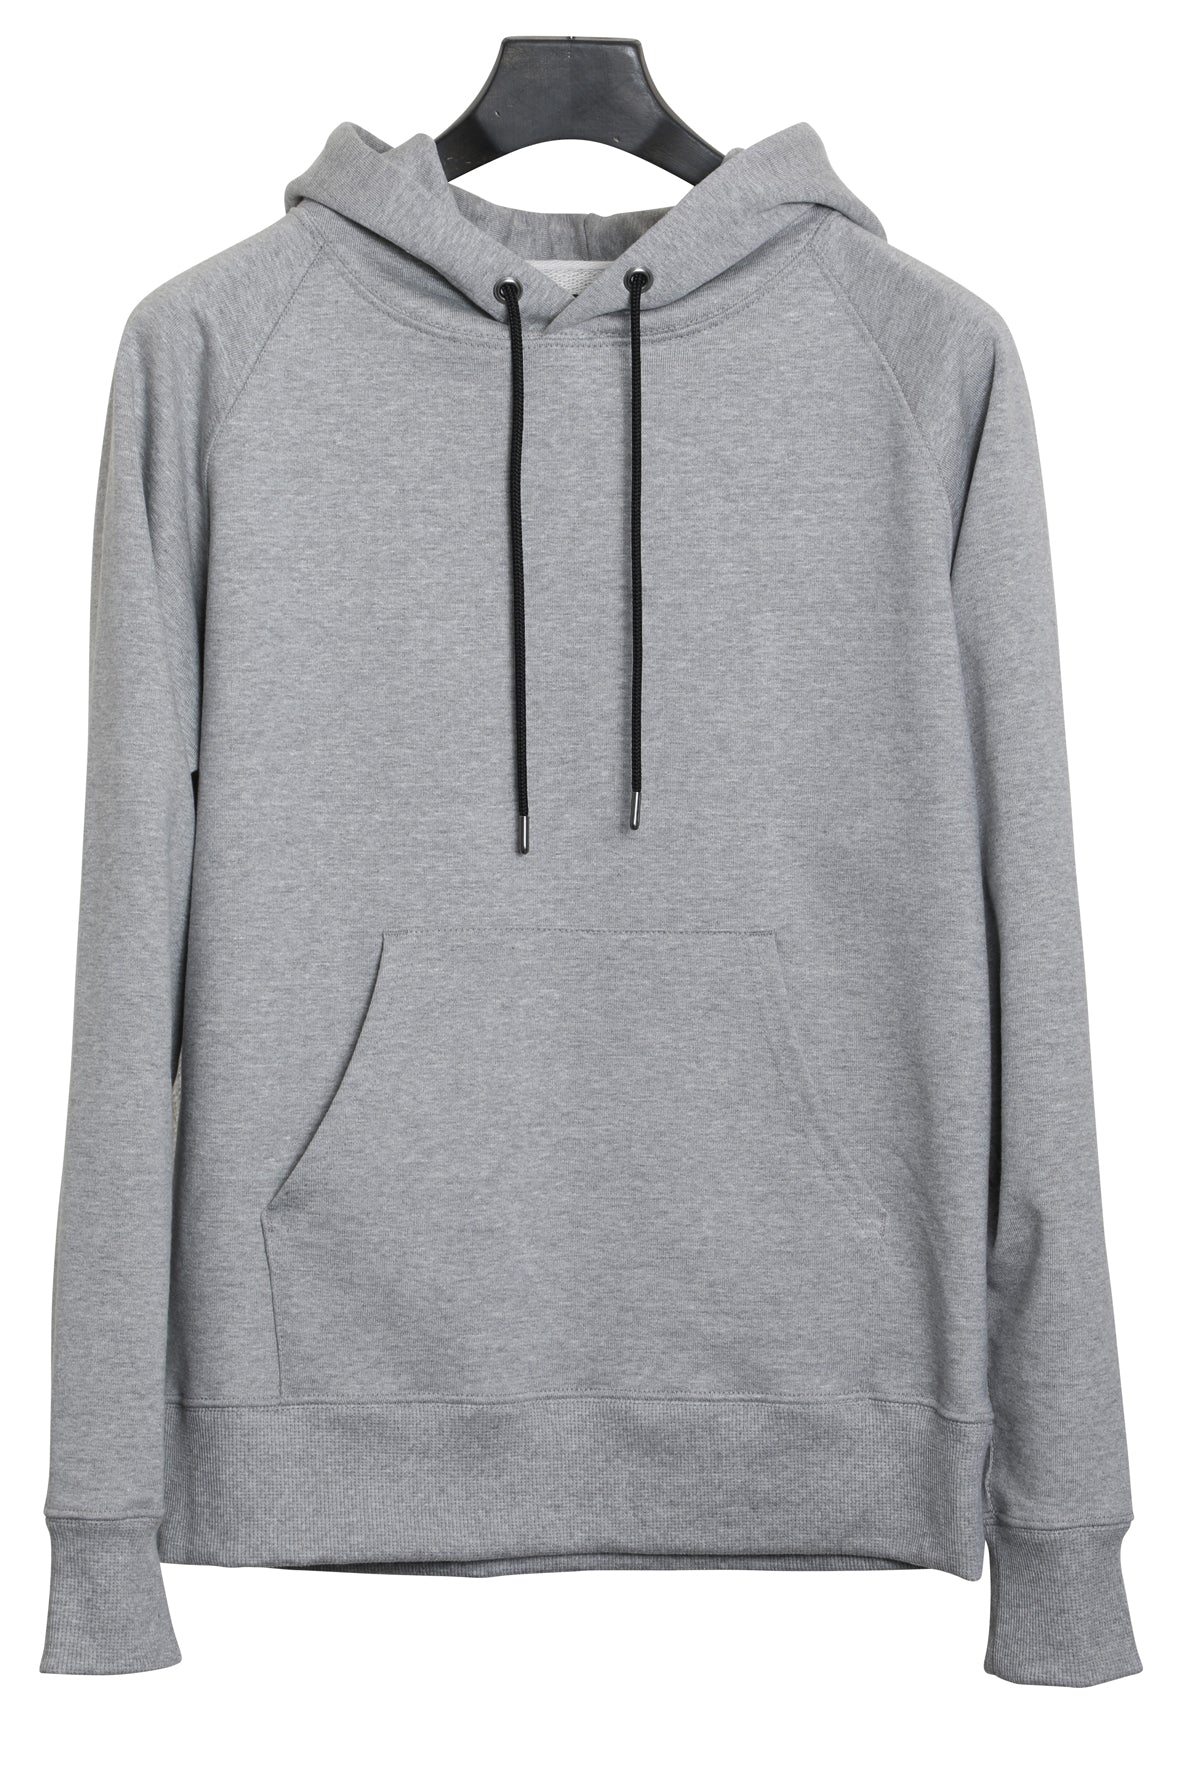 ファッション【Thug club】hoodie gray 専用